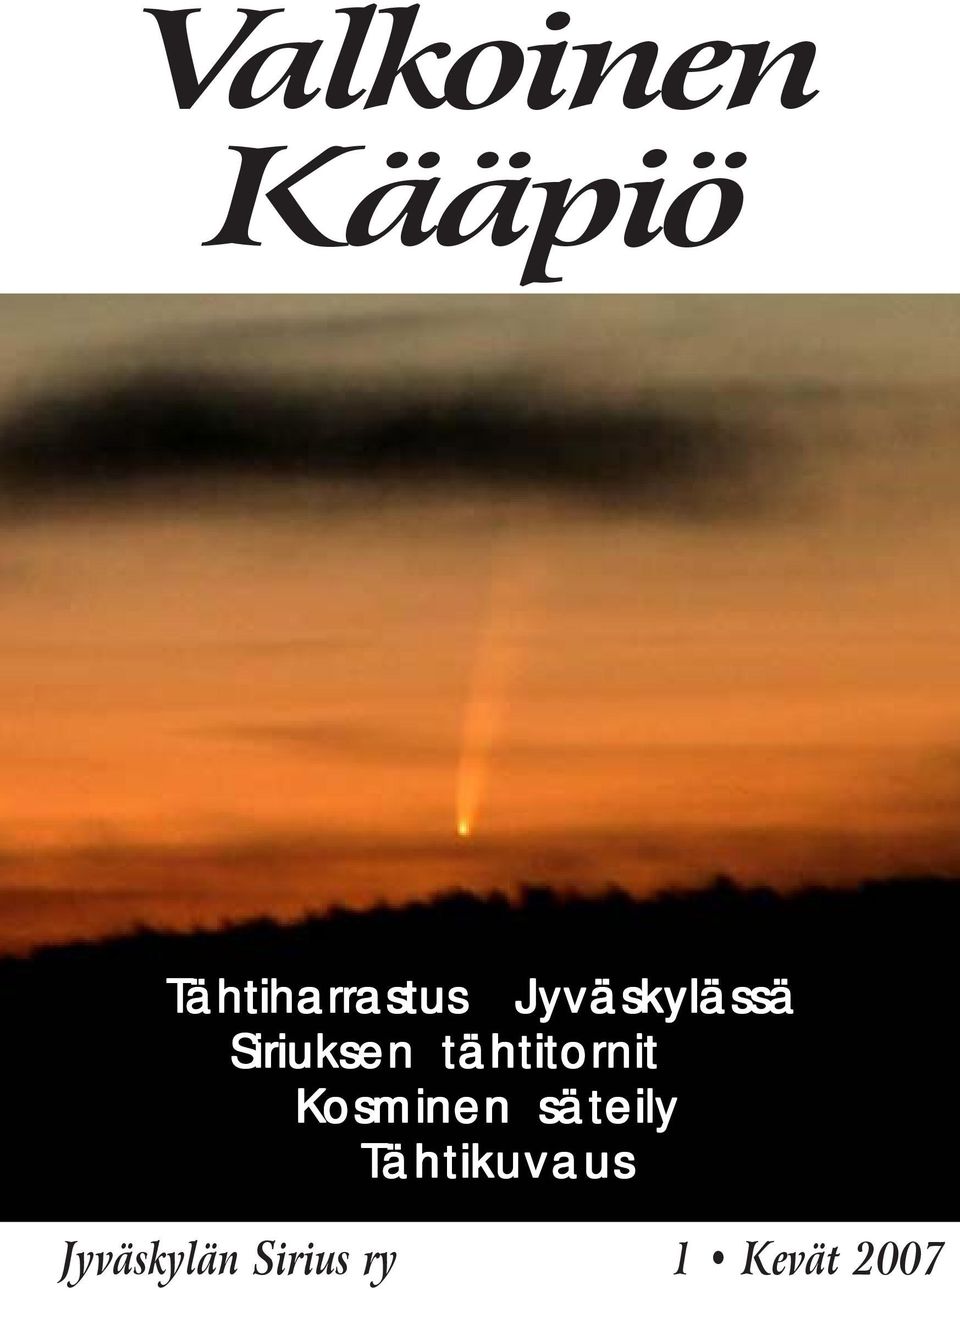 Kosminen säteily Tähtikuvaus Jyväskylän